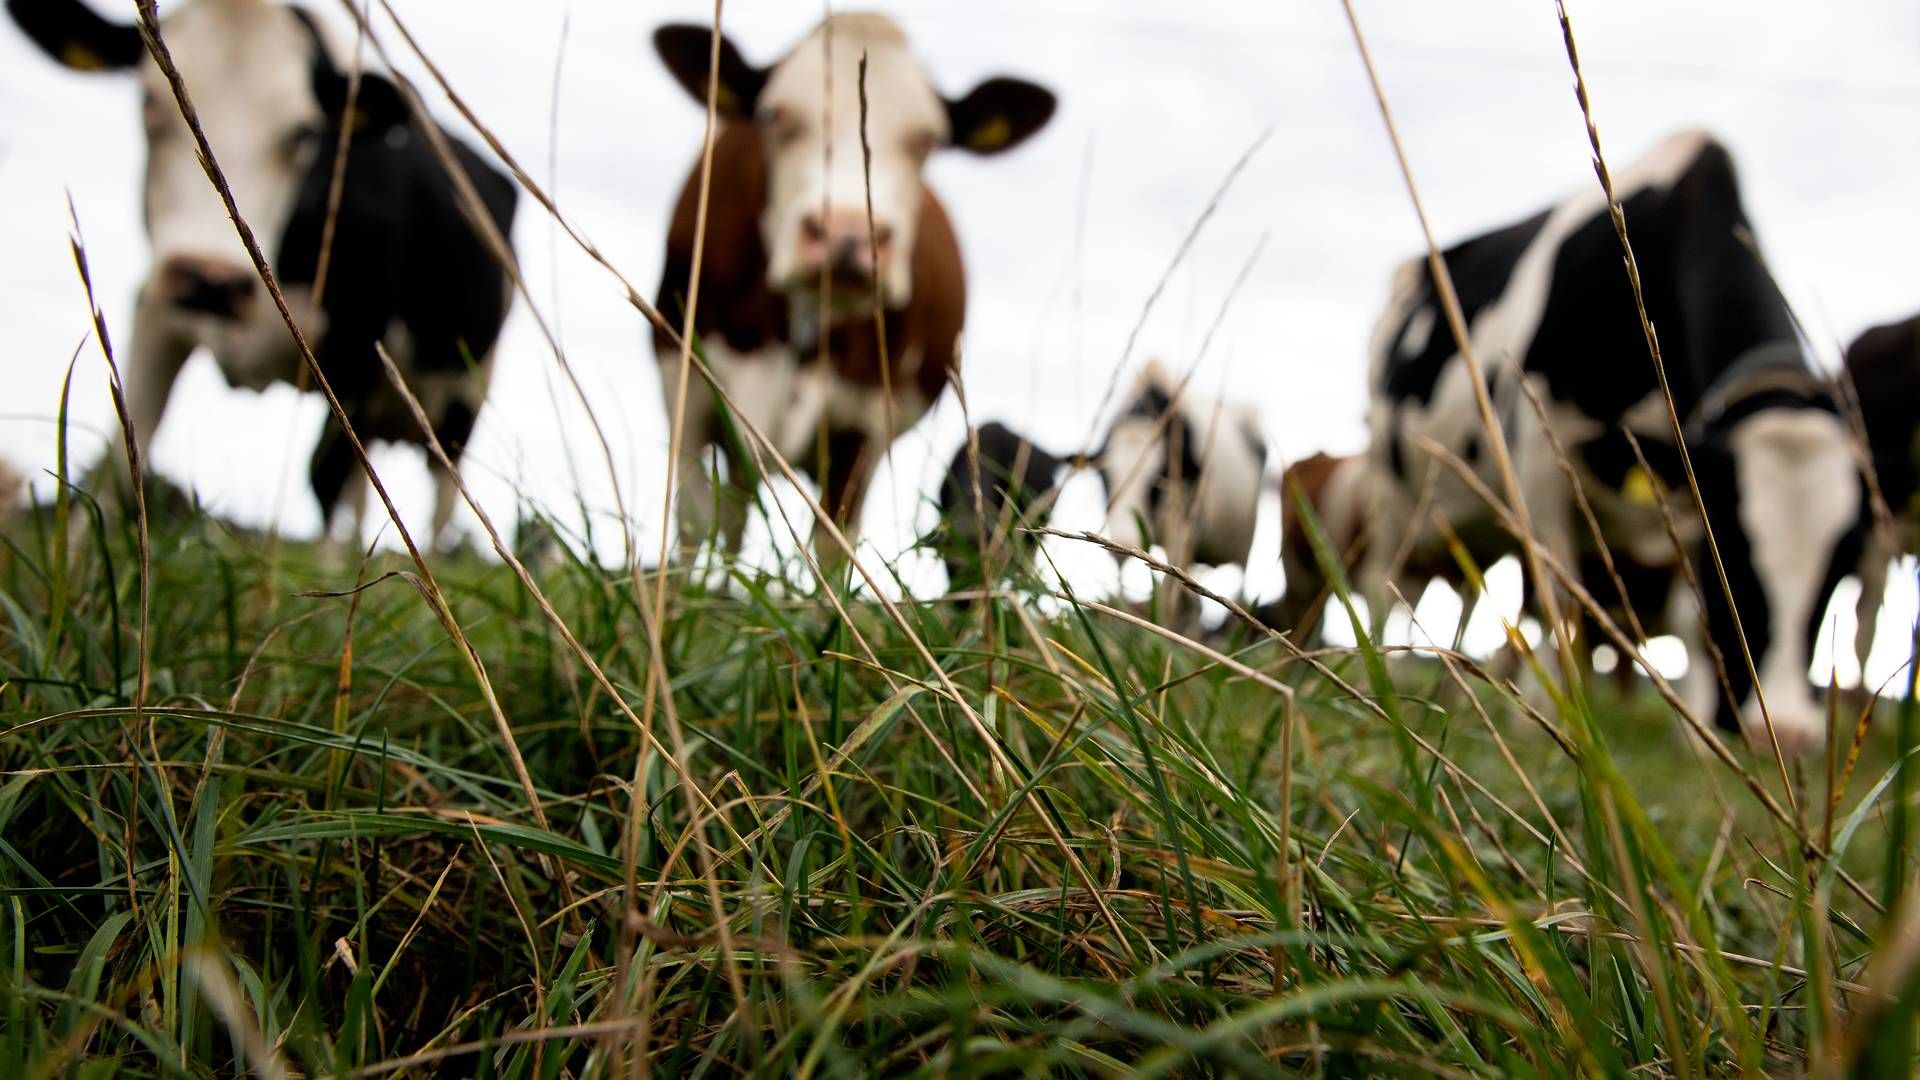 Ifølge det centrale husdyrbrugsregister har Mosevang Mælk en besætning på 2.646 køer. | Foto: Finn Frandsen